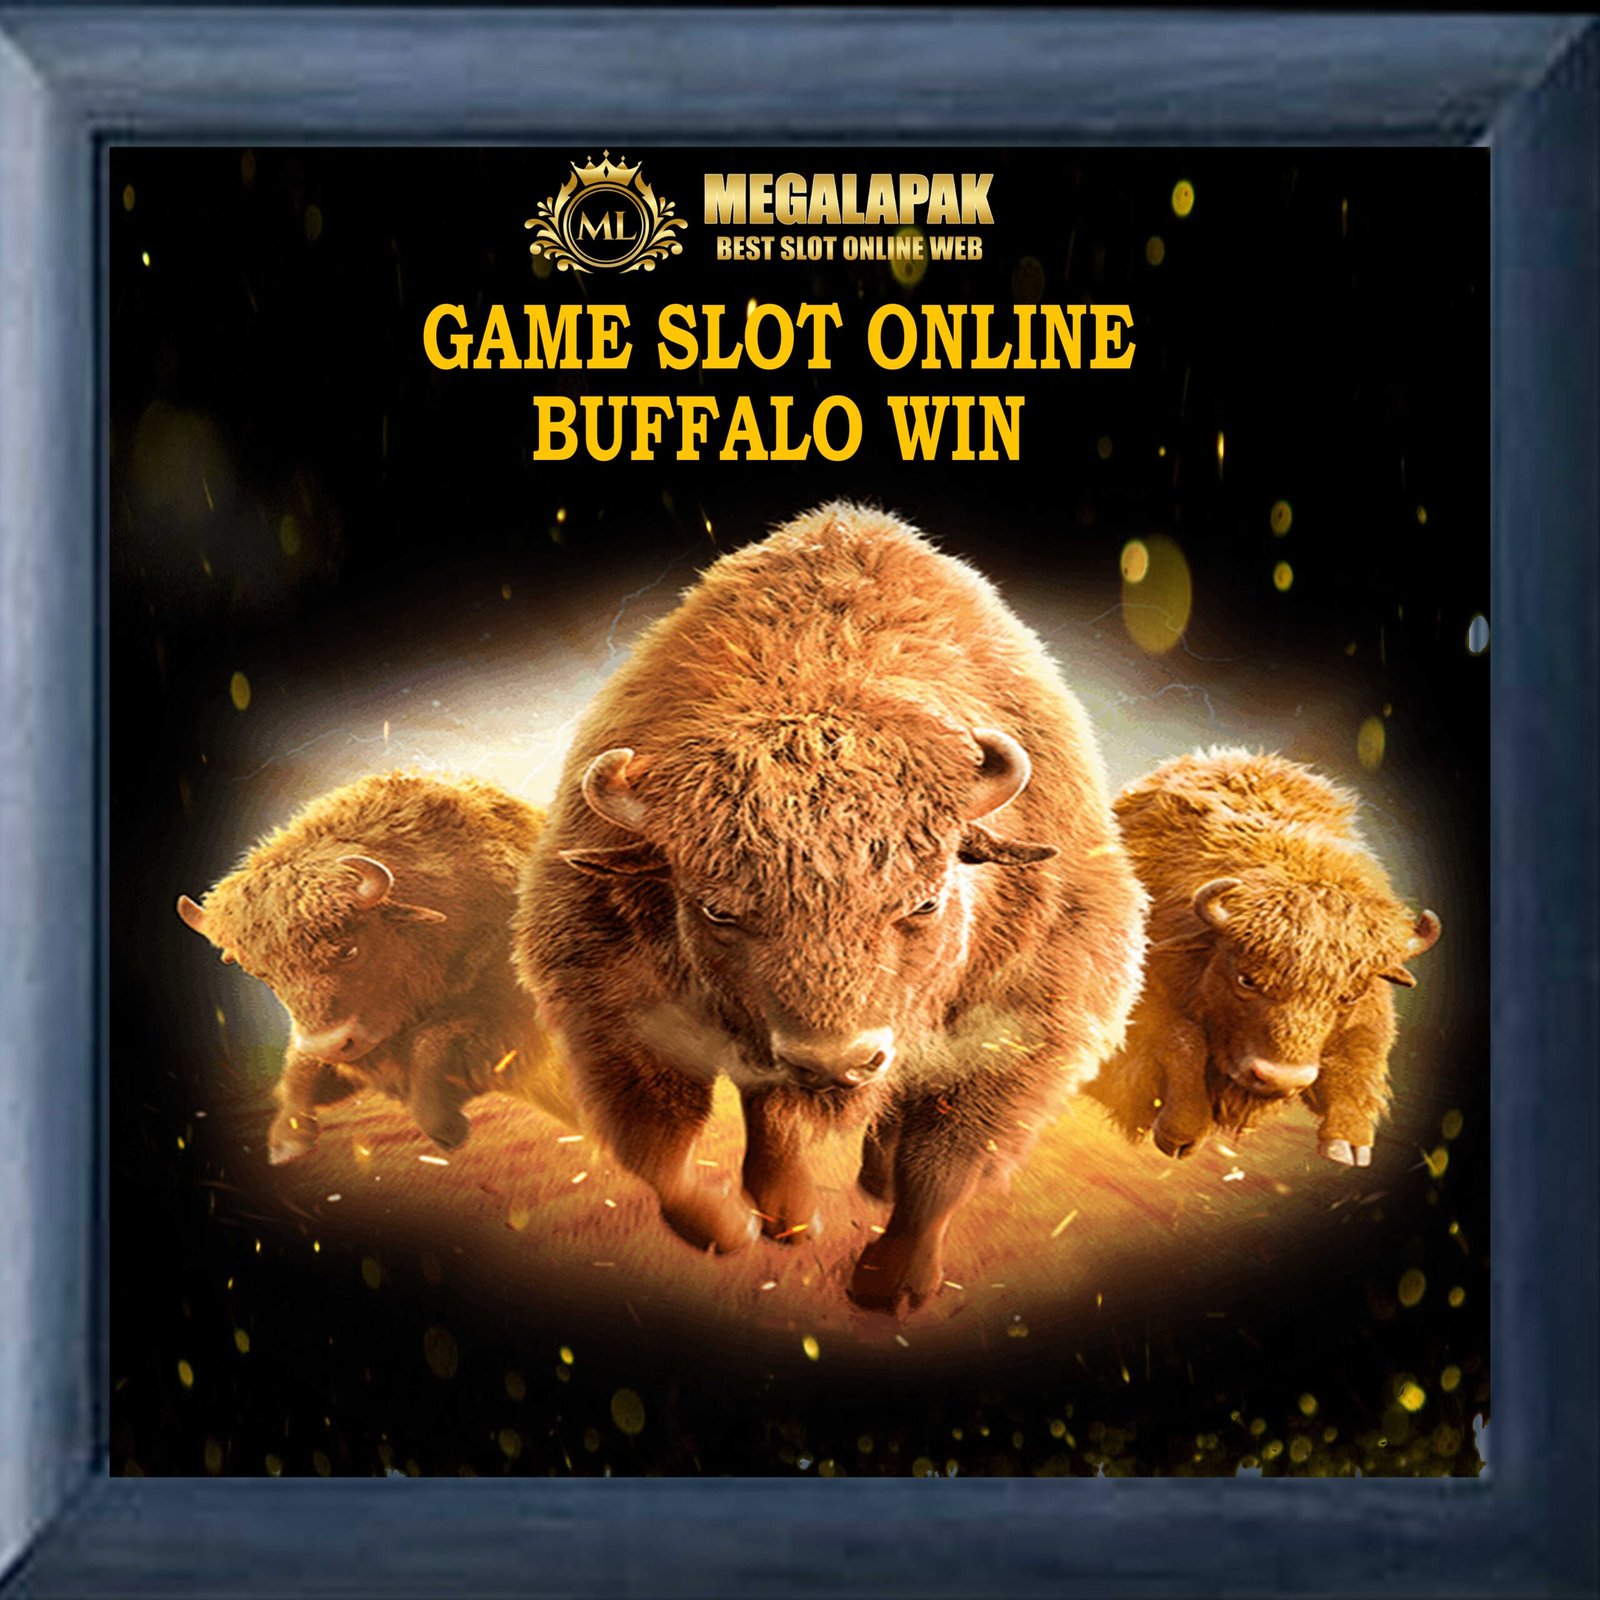 Slot Online Buffalo Win Megalapak